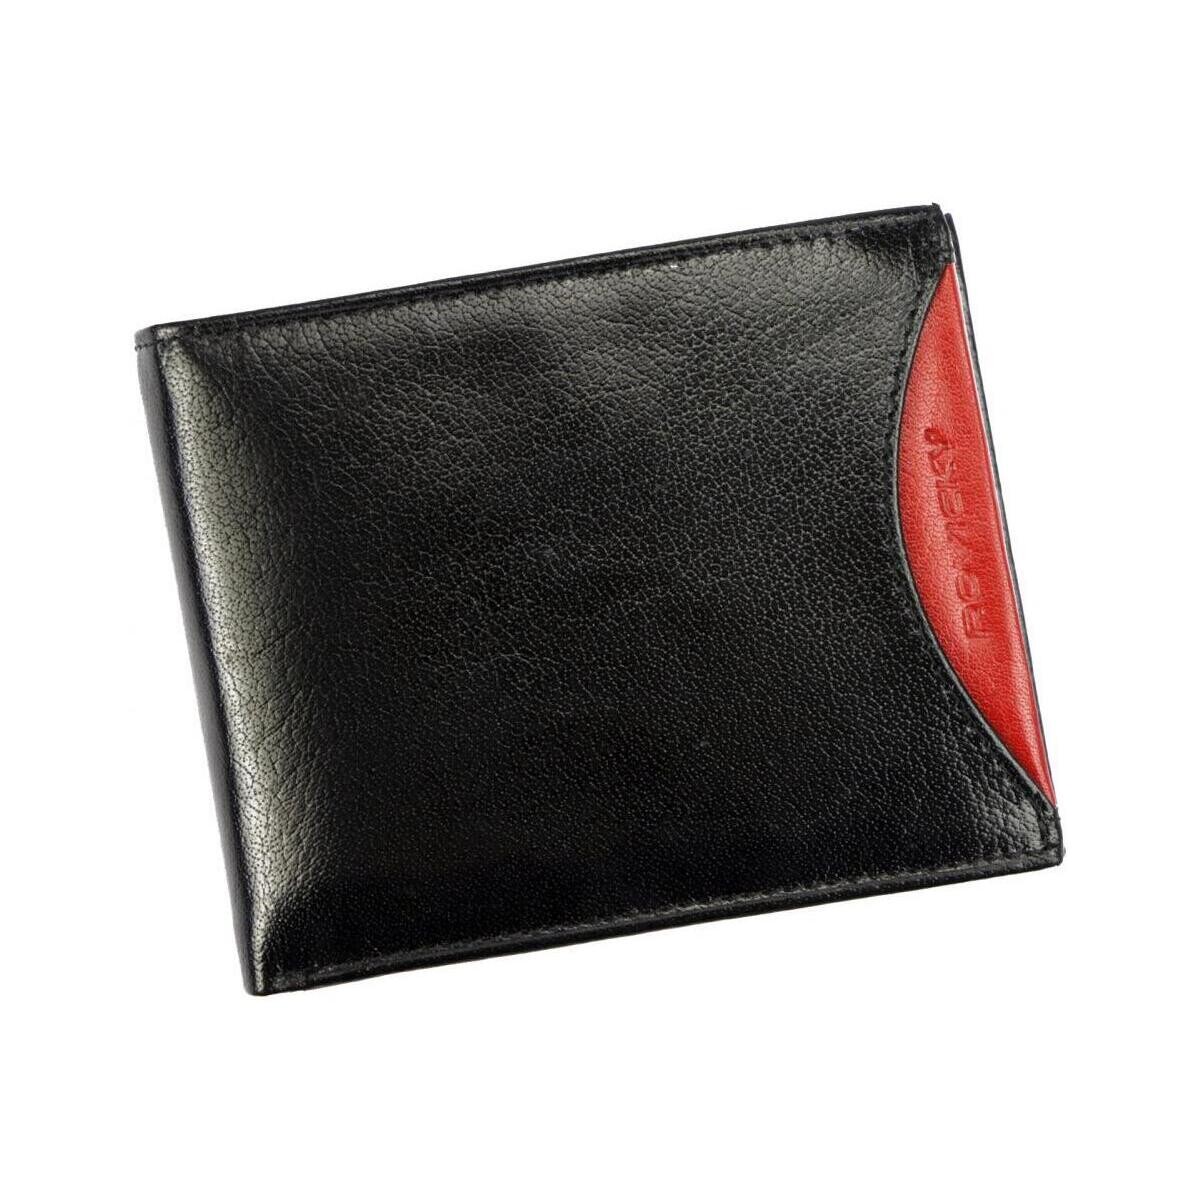 Taška Muži Náprsní tašky Rovicky Černo-červená kožená pánská peněženka RFID v krabičce Černá